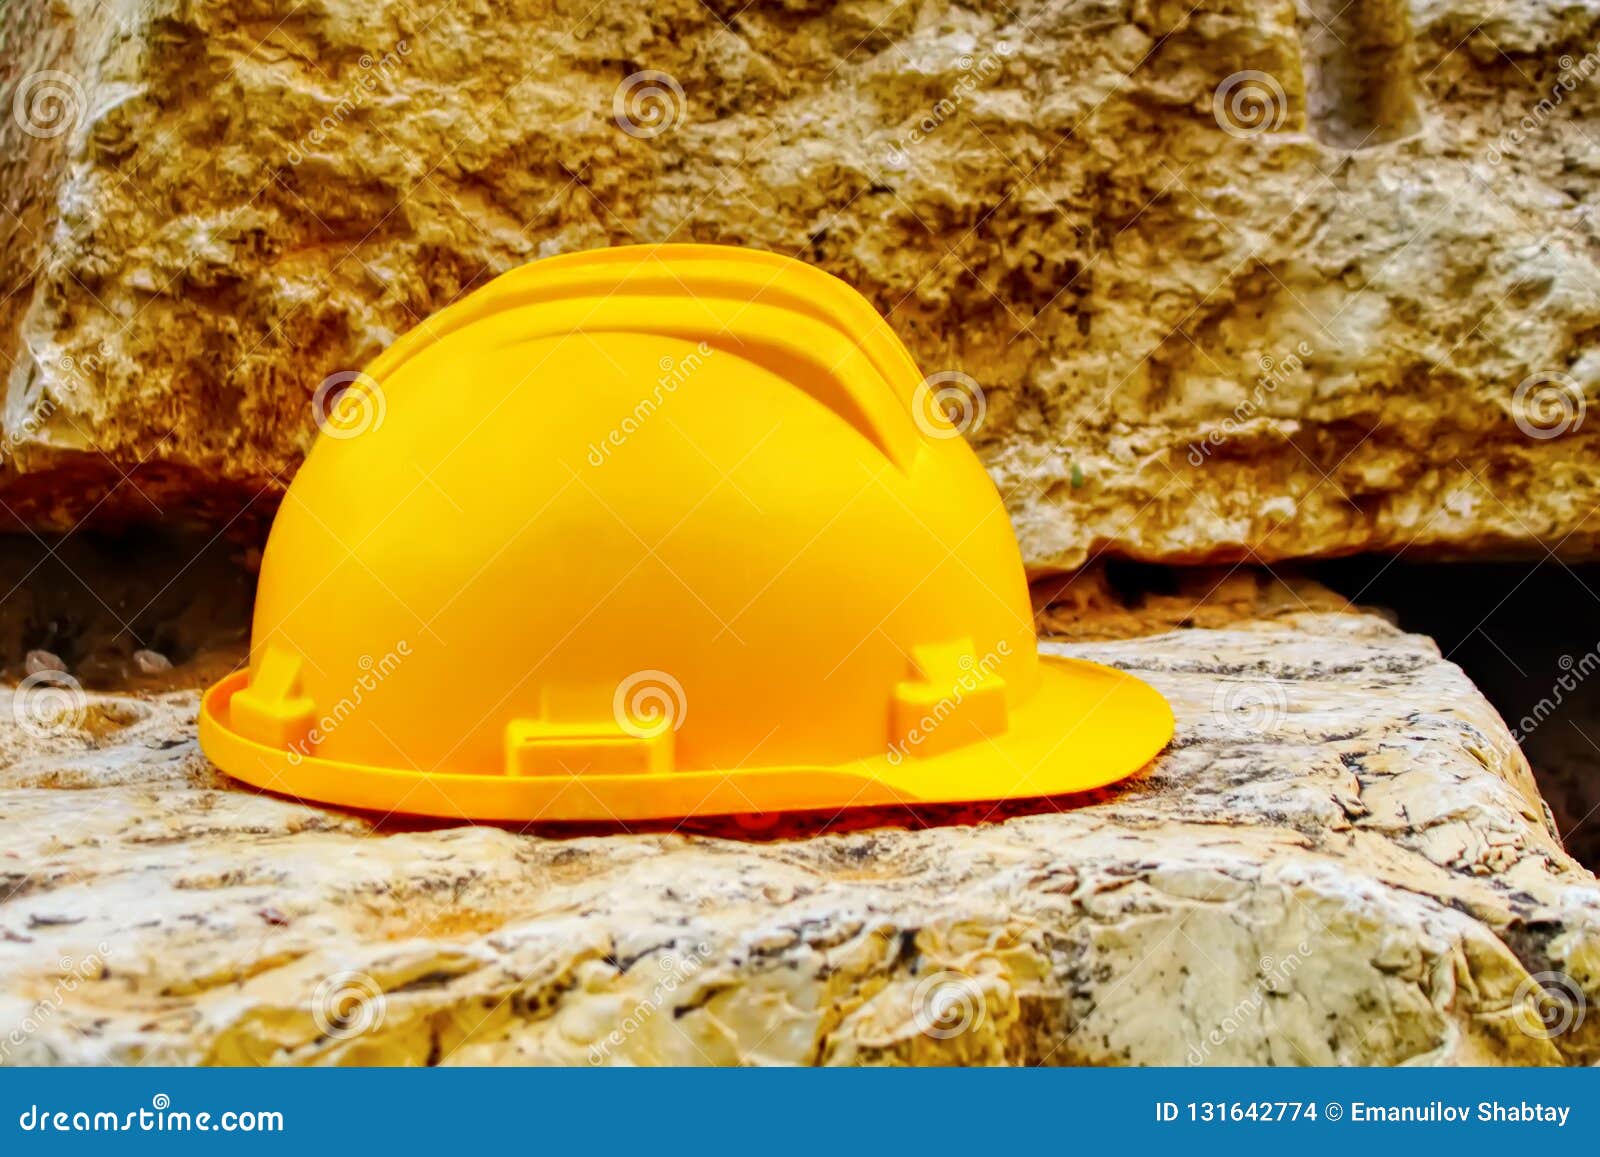 building, safety works: hard hat, construction hat helmet